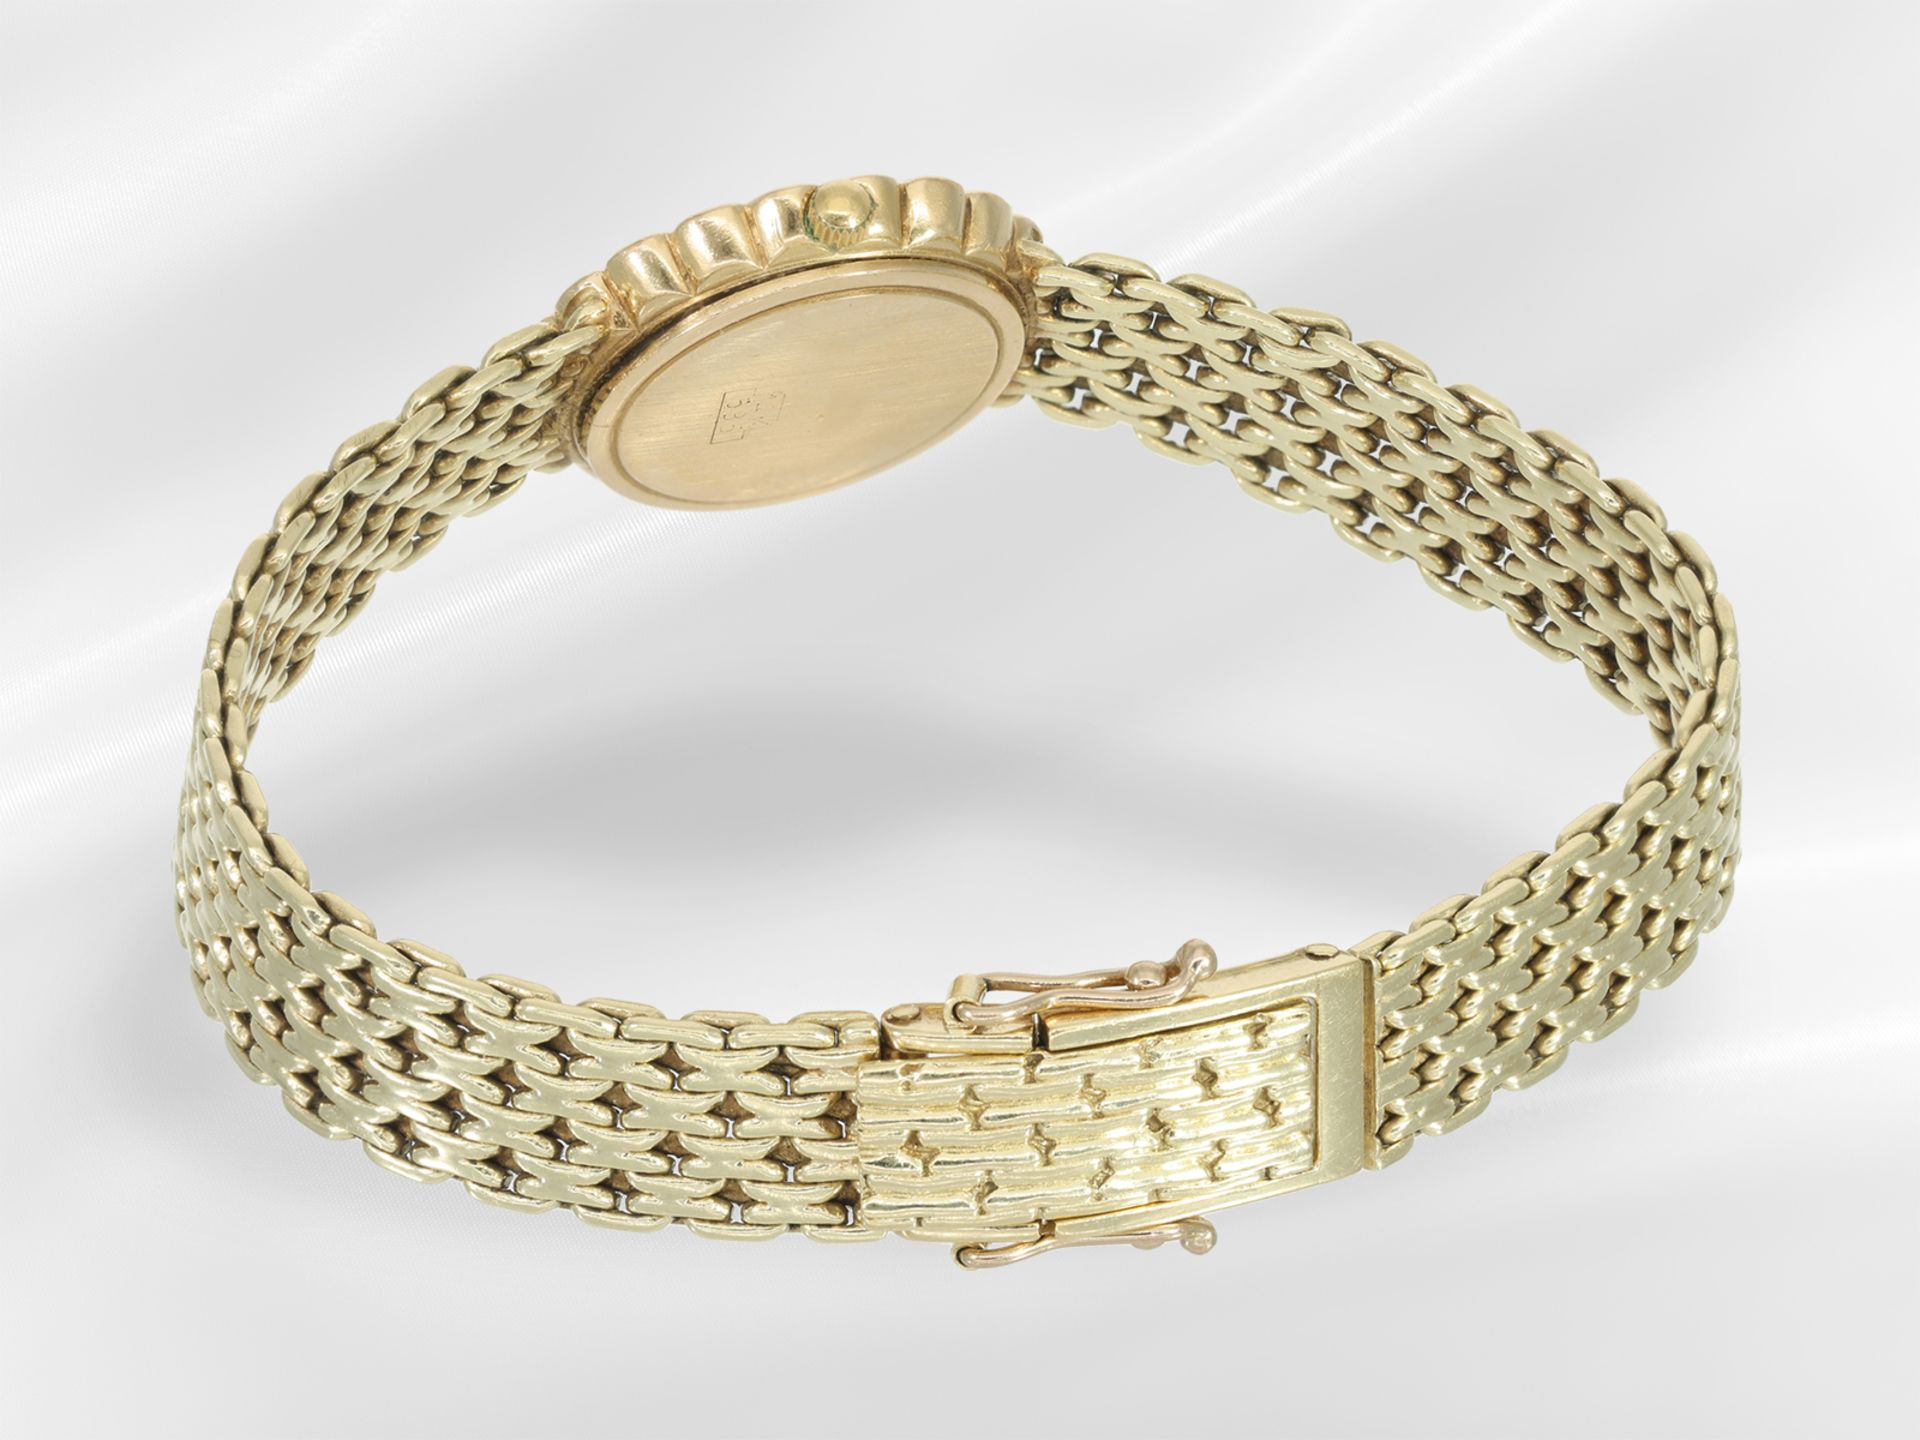 Armbanduhr: goldene vintage Damenuhr der Marke "Clay Montier" mit Brillantbesatz - Bild 4 aus 4